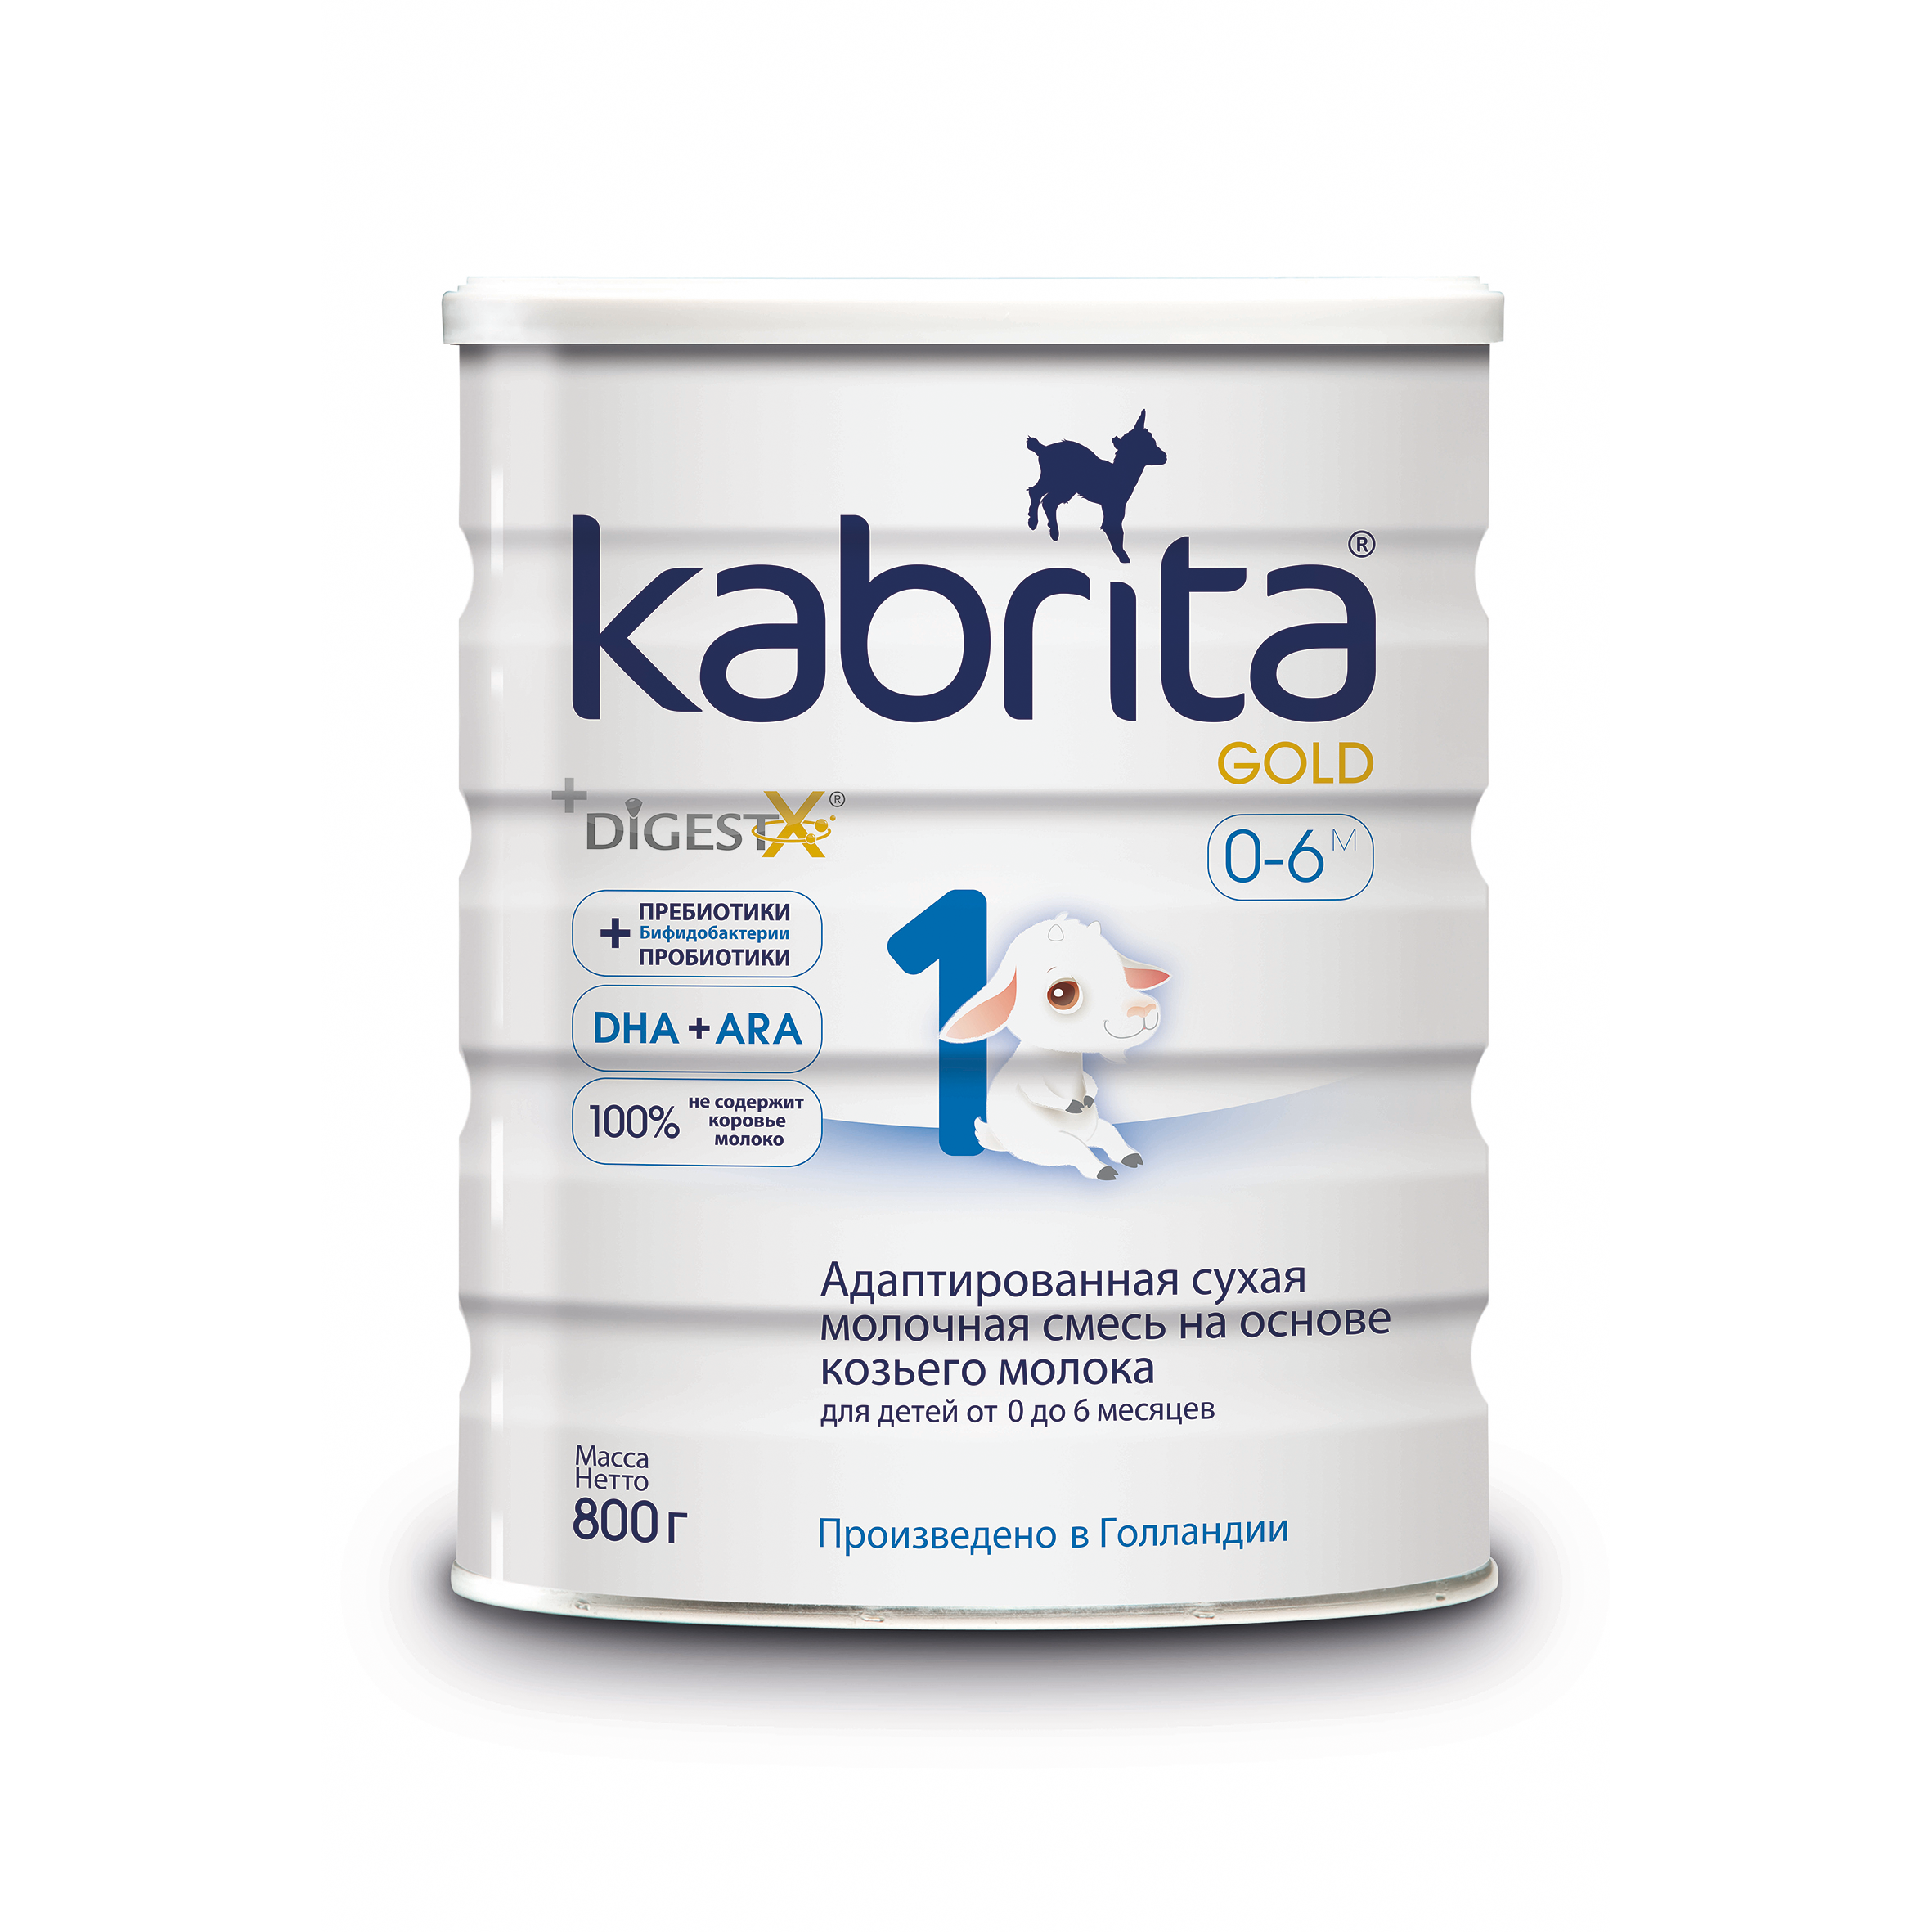 Смесь на основе козьего молока Kabrita Gold от 0 до 6 мес. 800 г смесь на основе козьего молока бибиколь нэнни классика от 0 до 12 мес 800 г